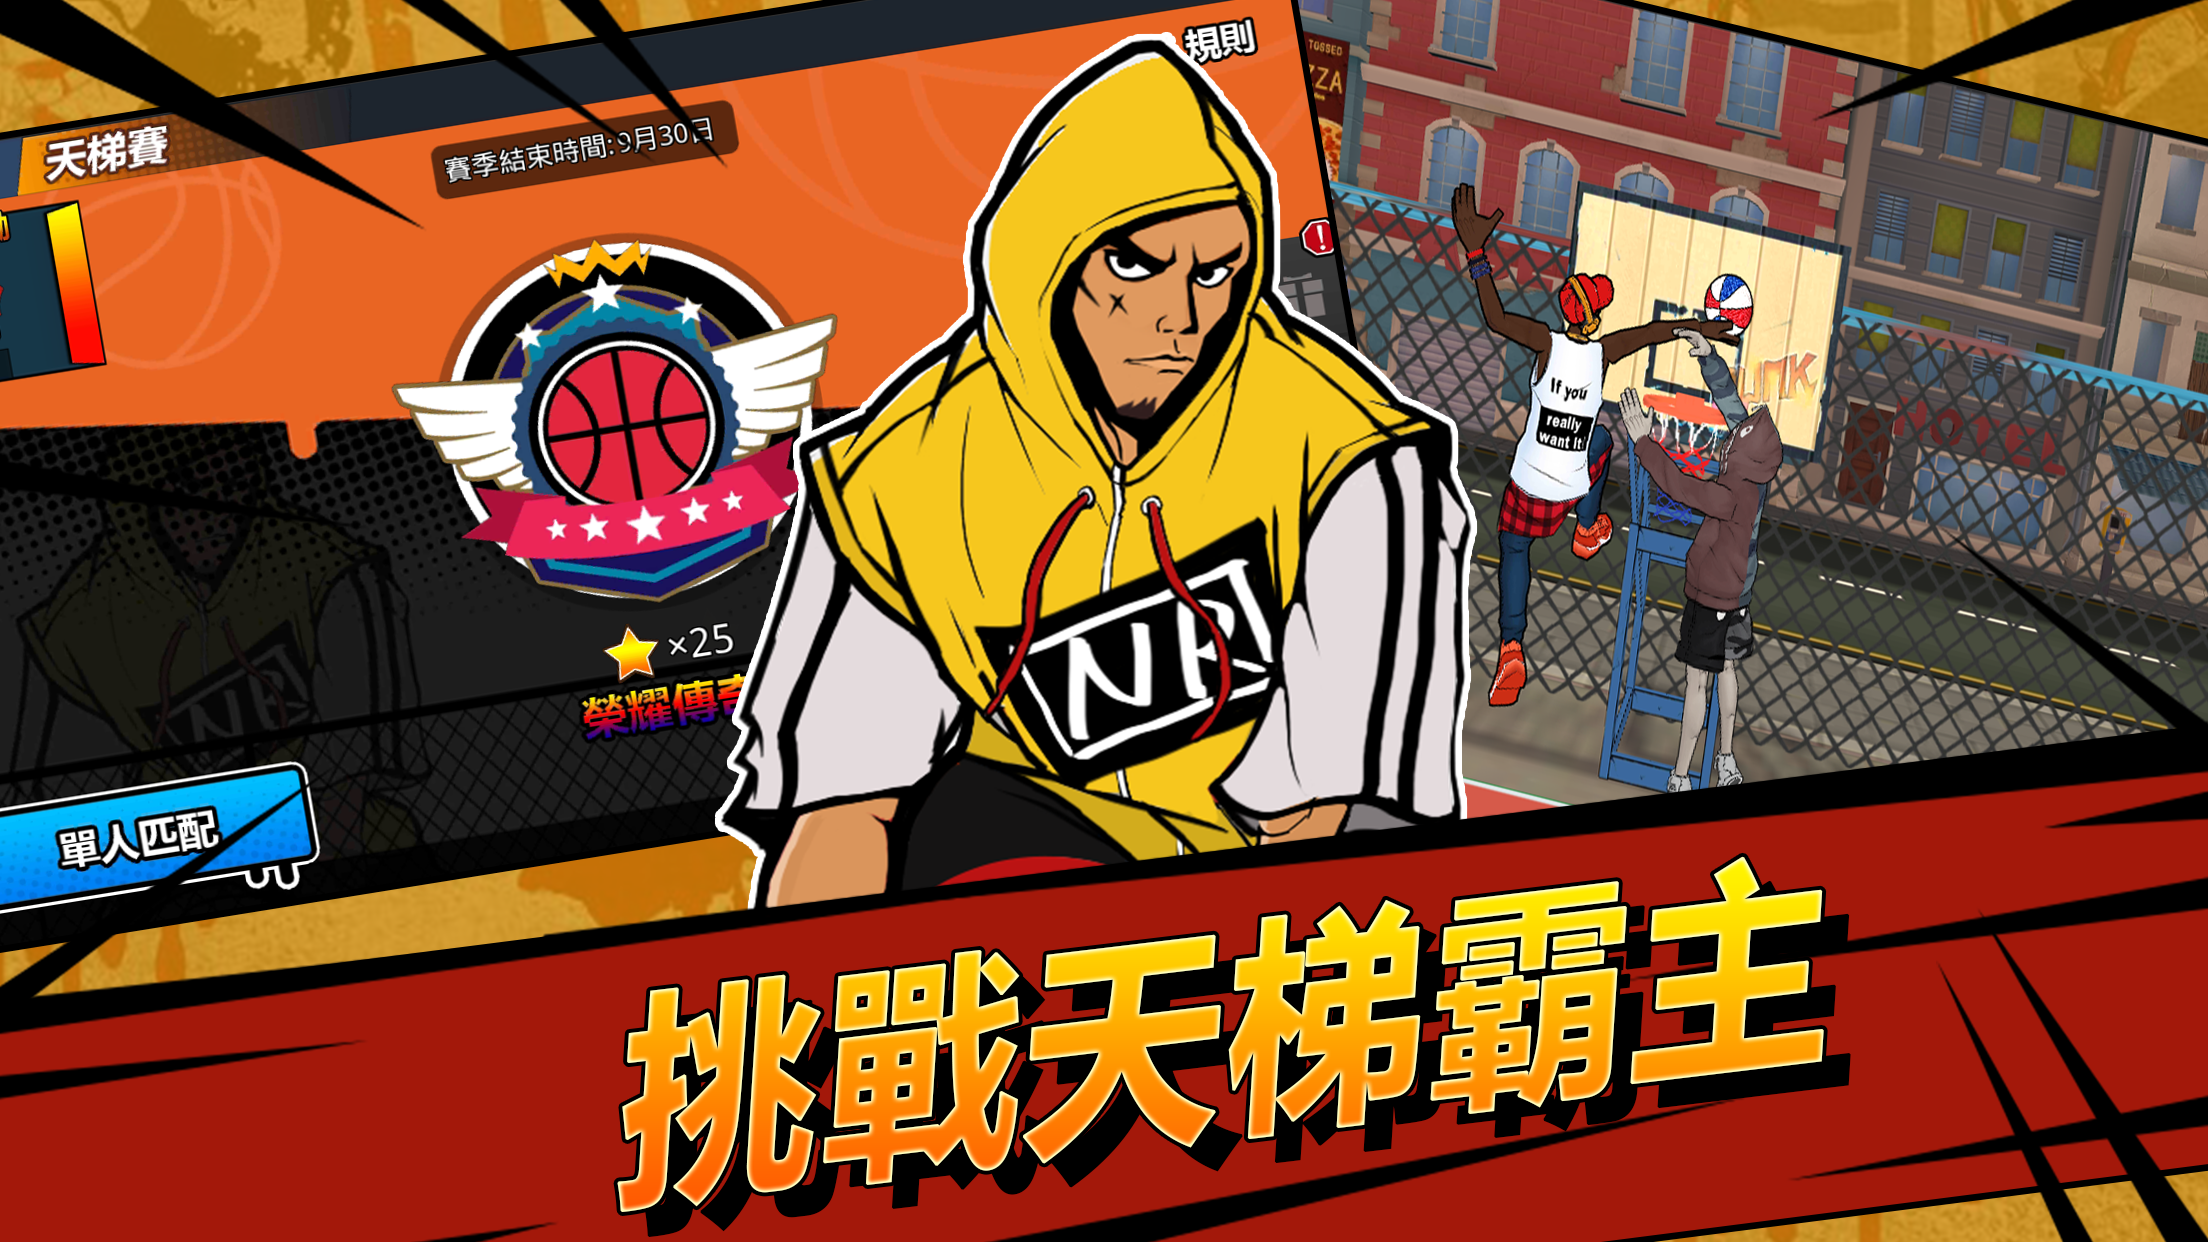 Screenshot 1 of Street Jam: 3on3 Live vs. Jogo de basquete 1.6.0.7